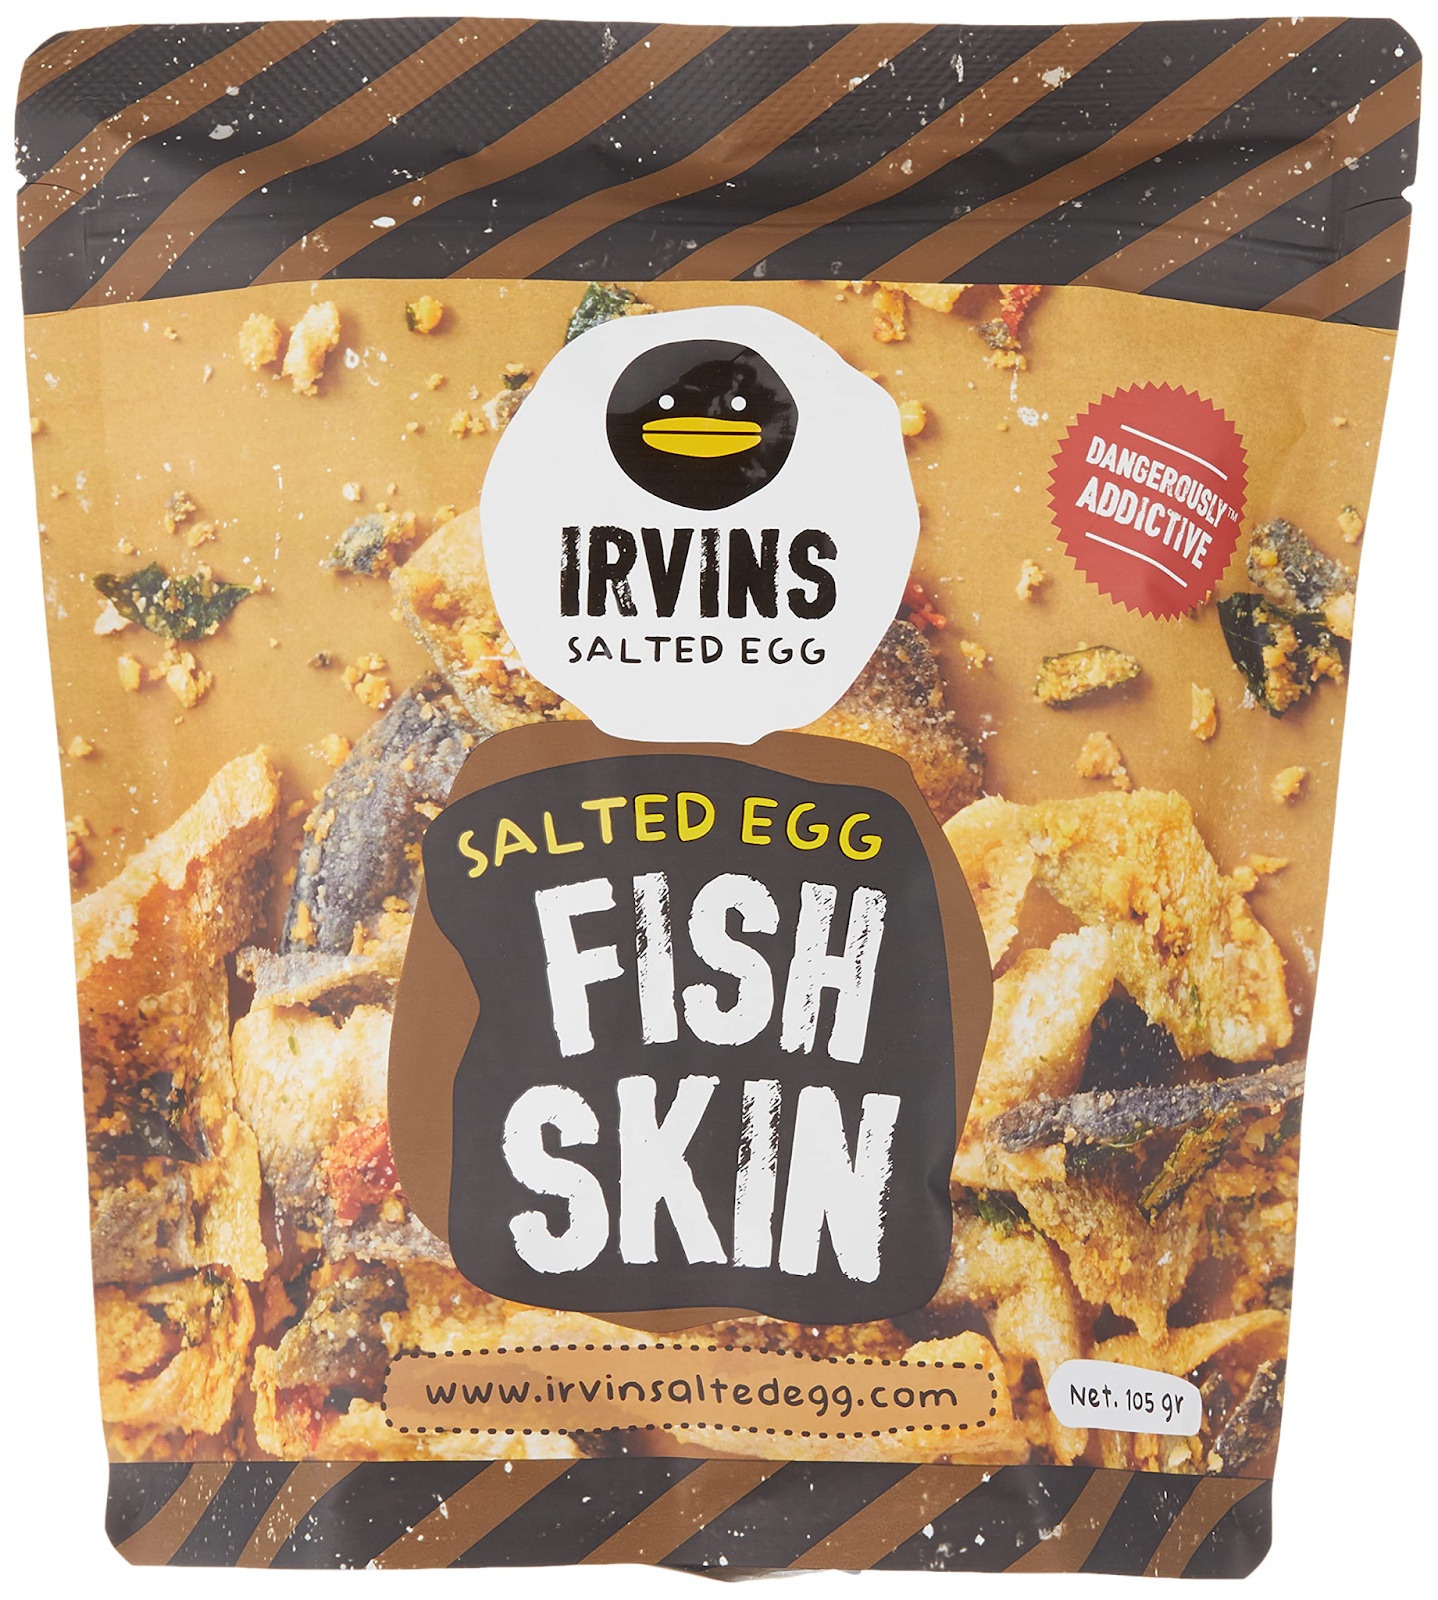 Irvins Salted Egg Fish Skin